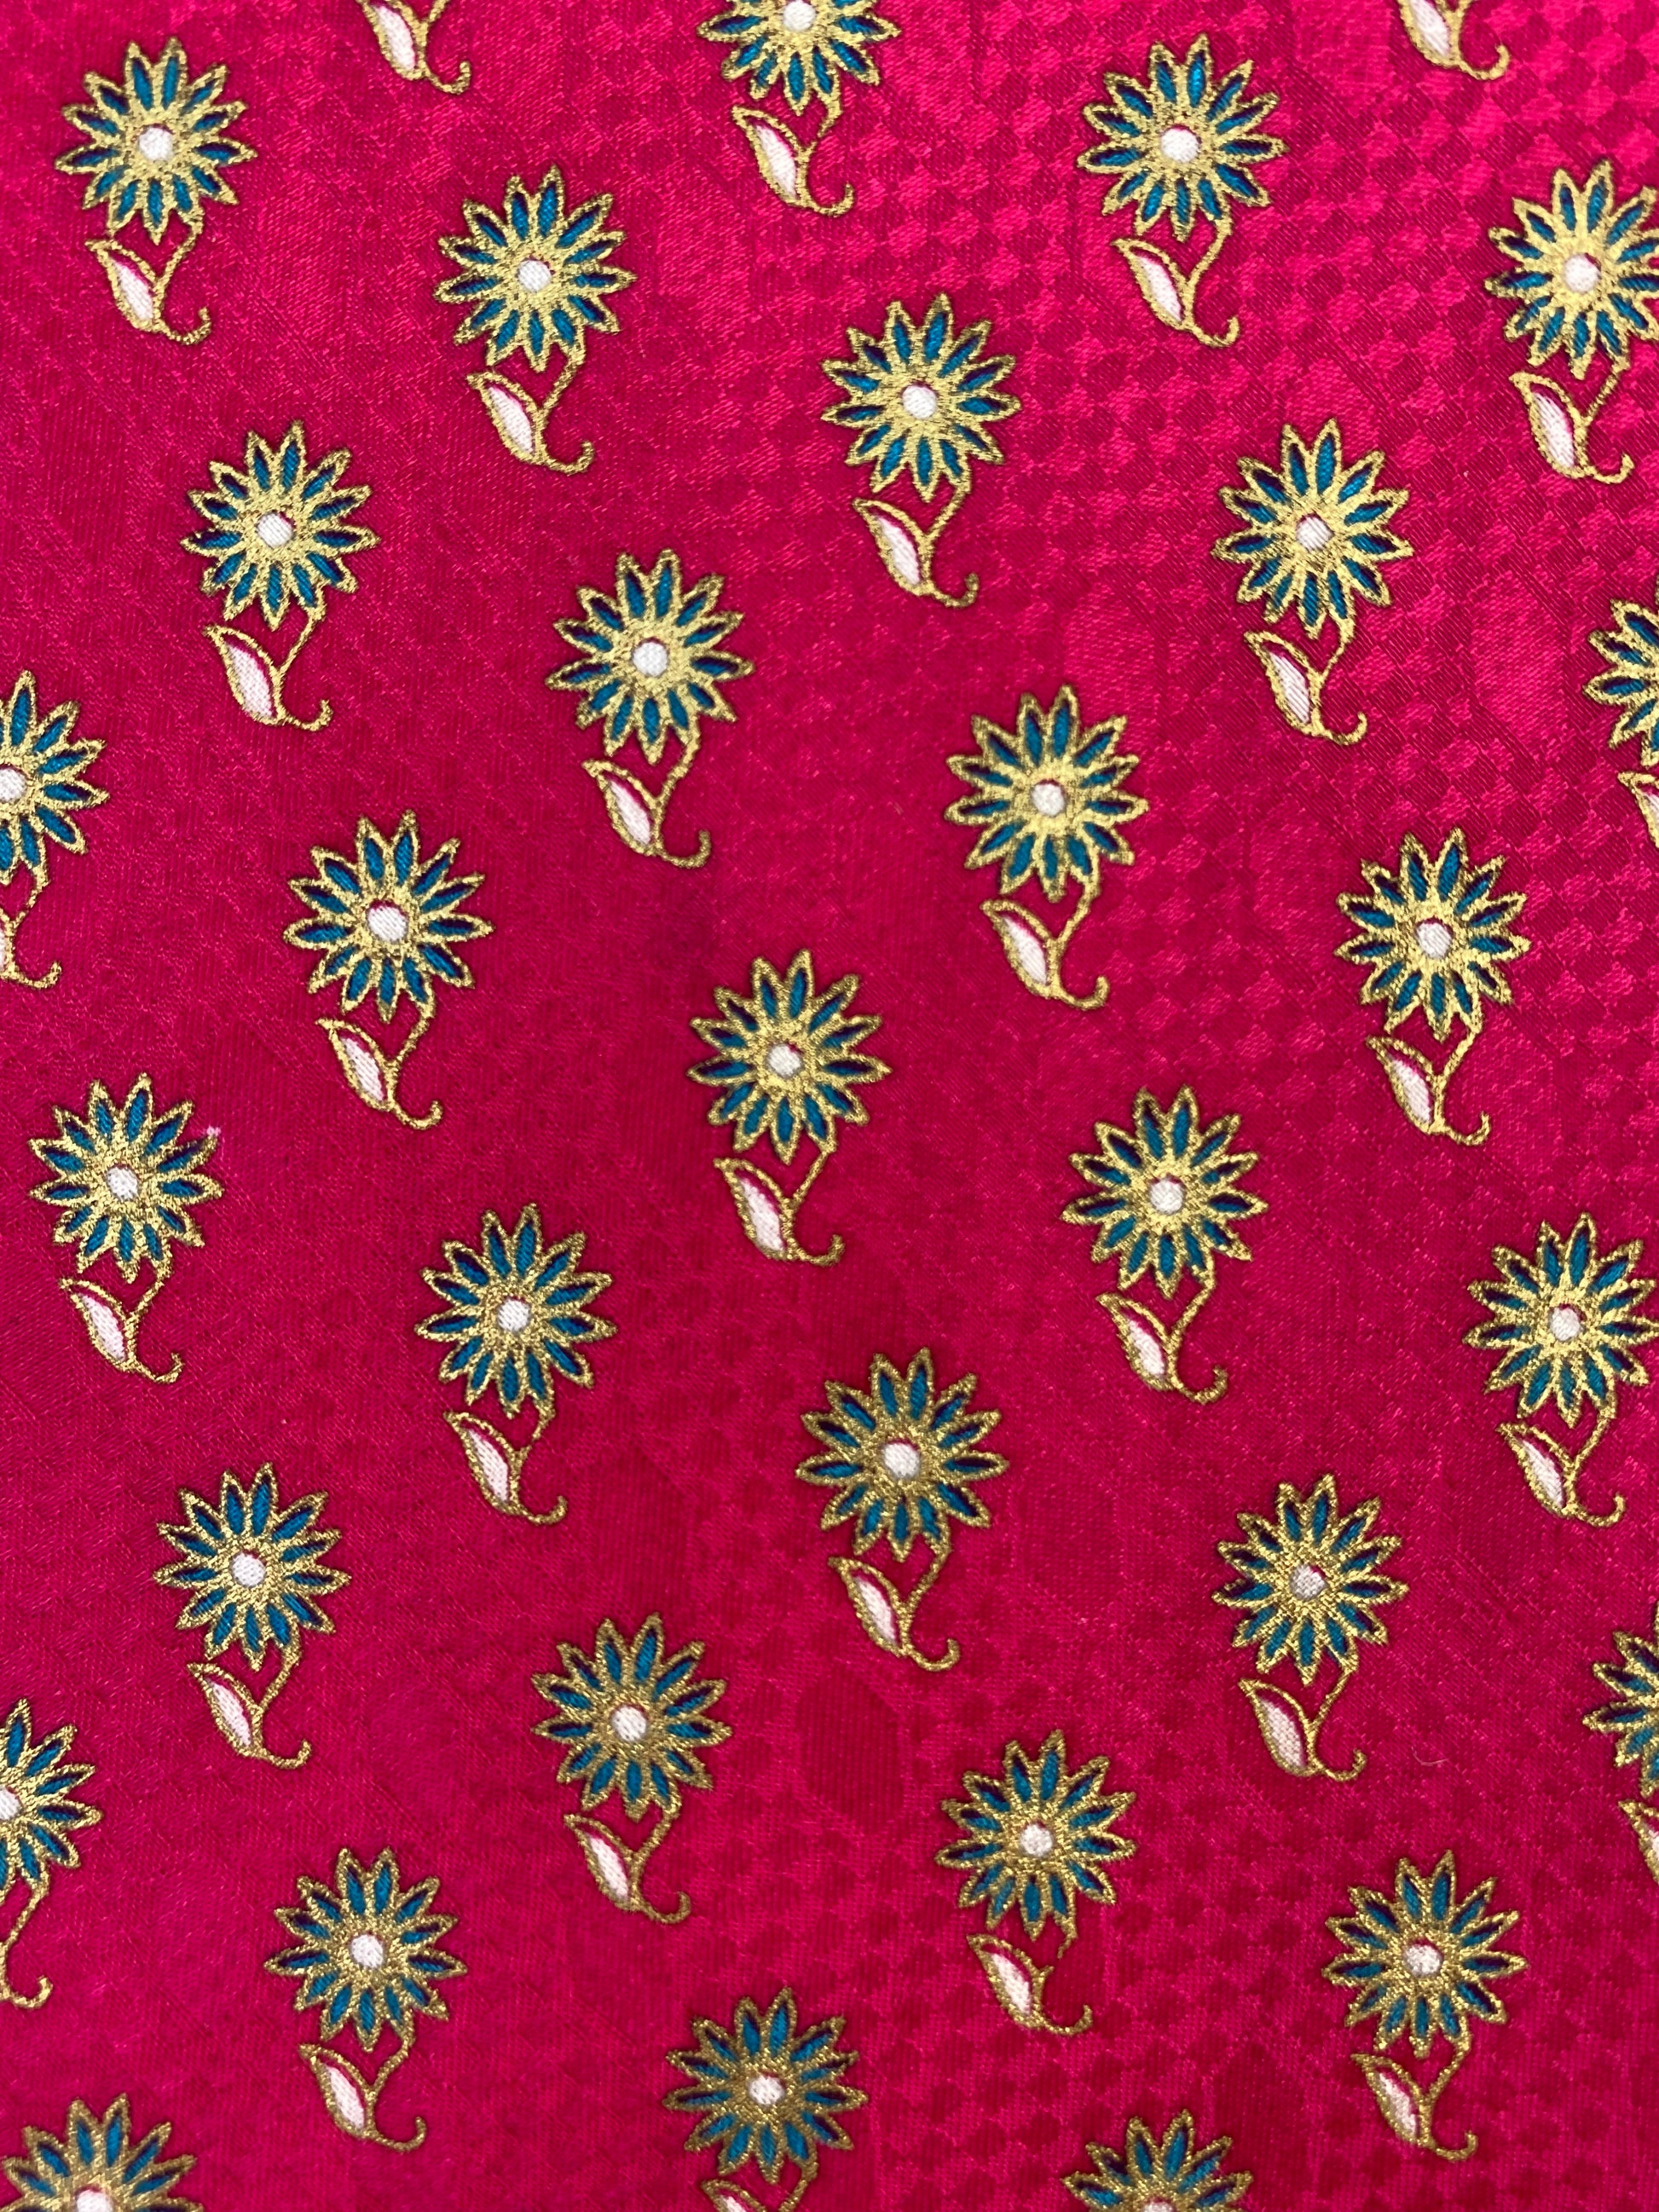 90s Deadstock Silk Necktie, Men's Vintage Pink Floral Pattern Tie, NOS